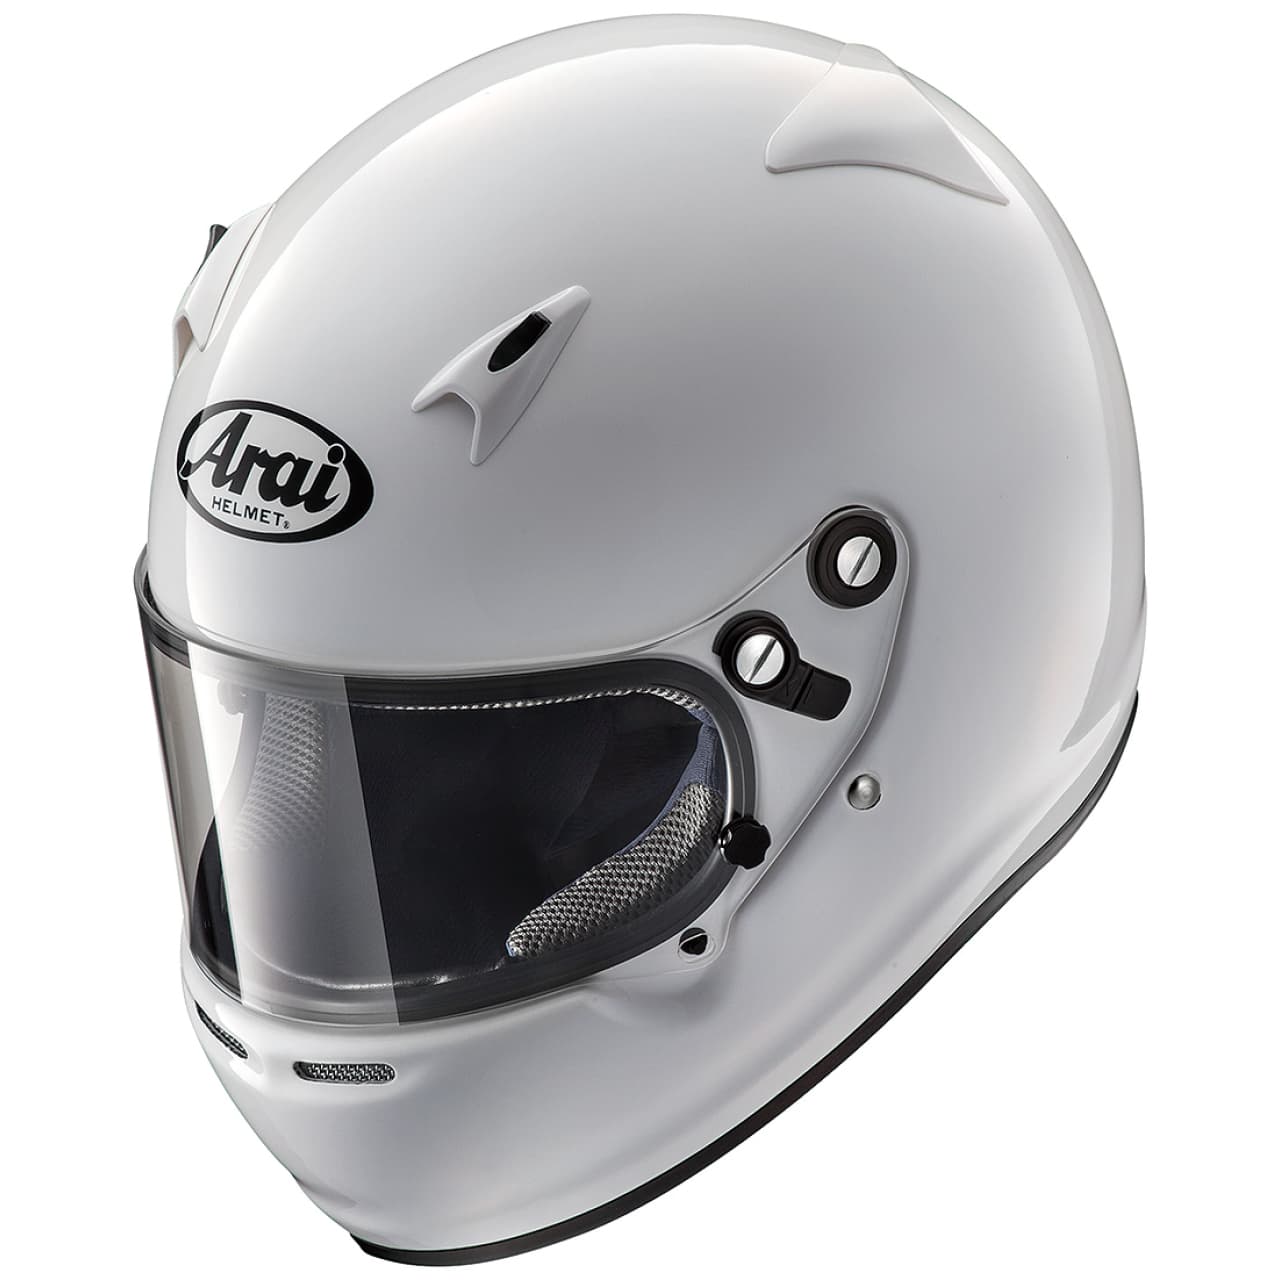 Araiフルフェイスヘルメット自動車/バイク